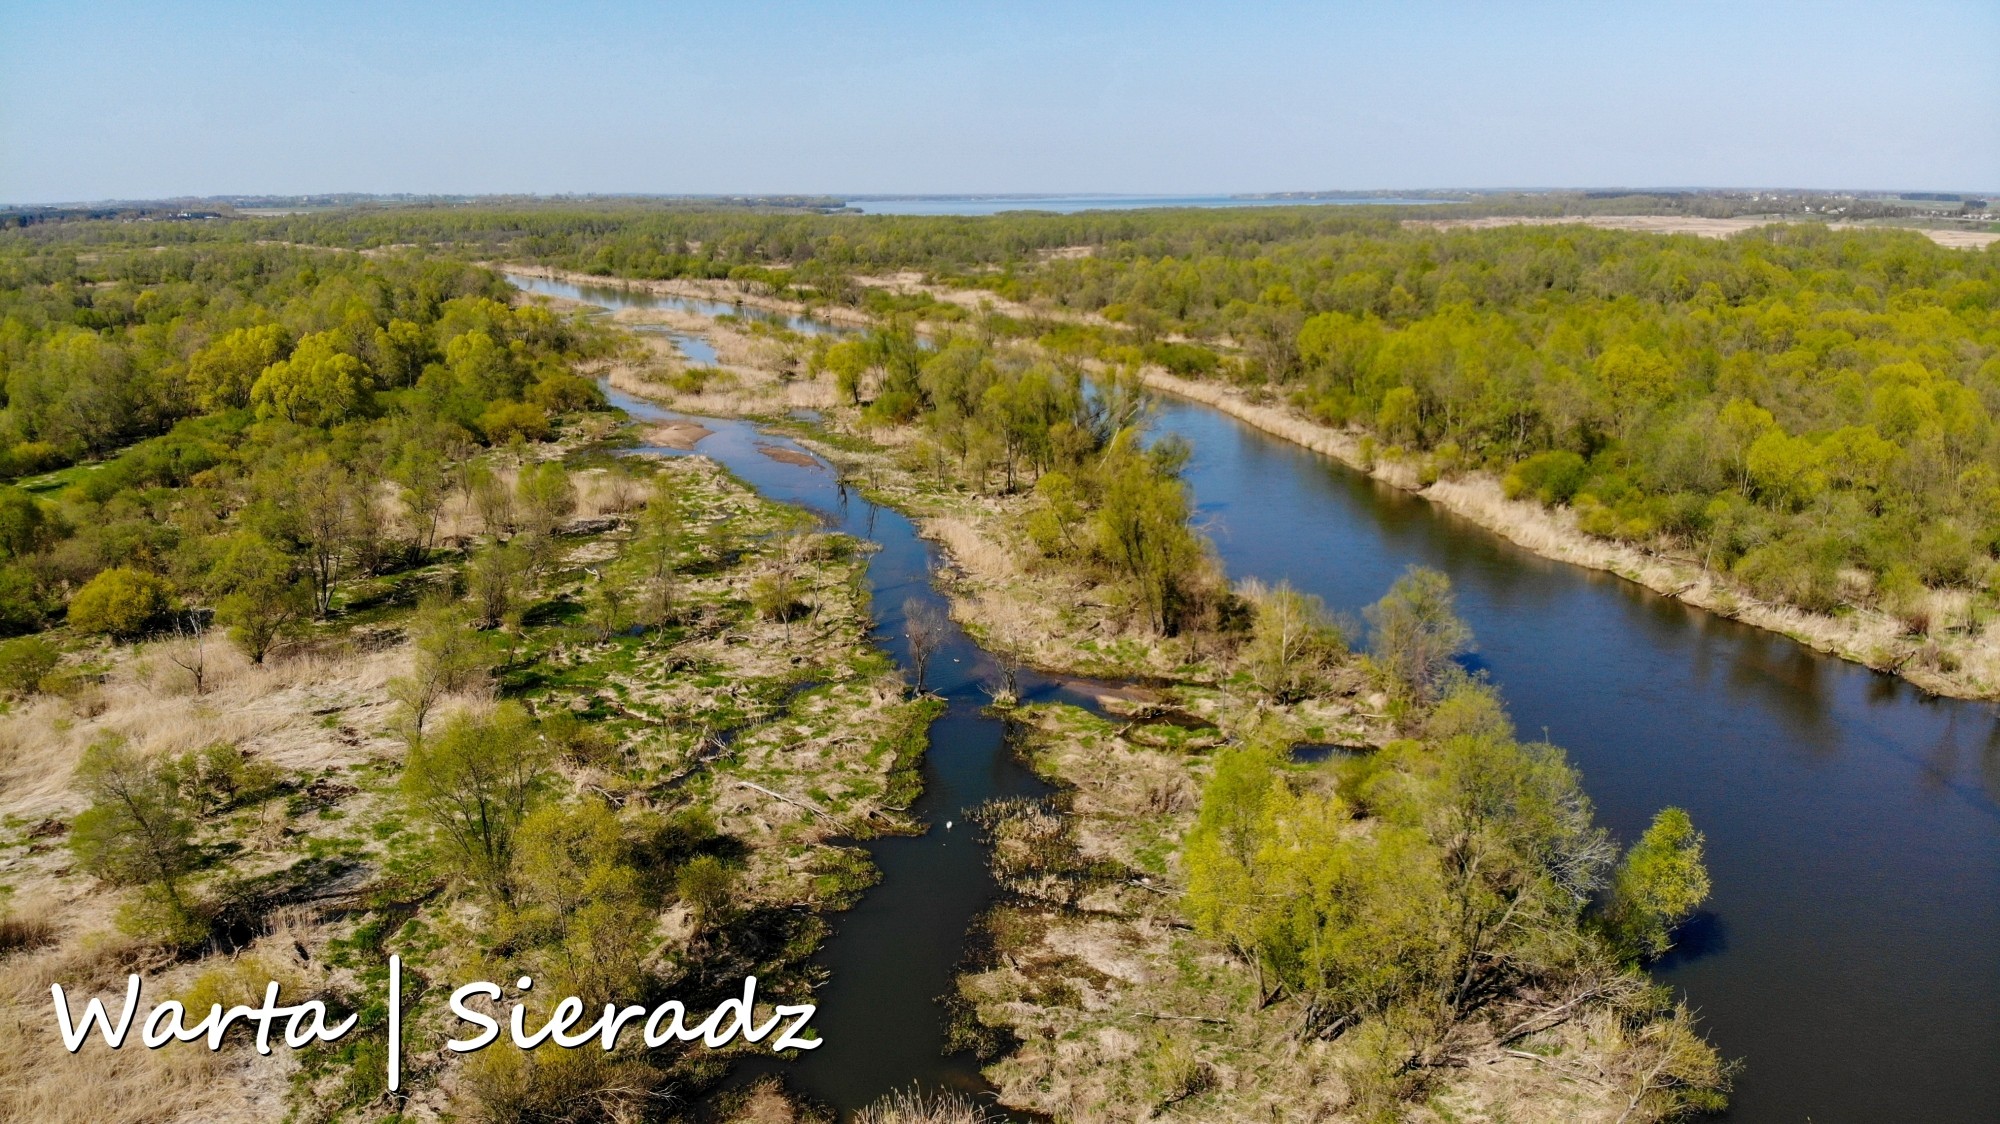 Najbardziej malownicze polskie rzeki widziane z lotu ptaka. Zobacz je na zdjęciach lub filmie w jakości 4K